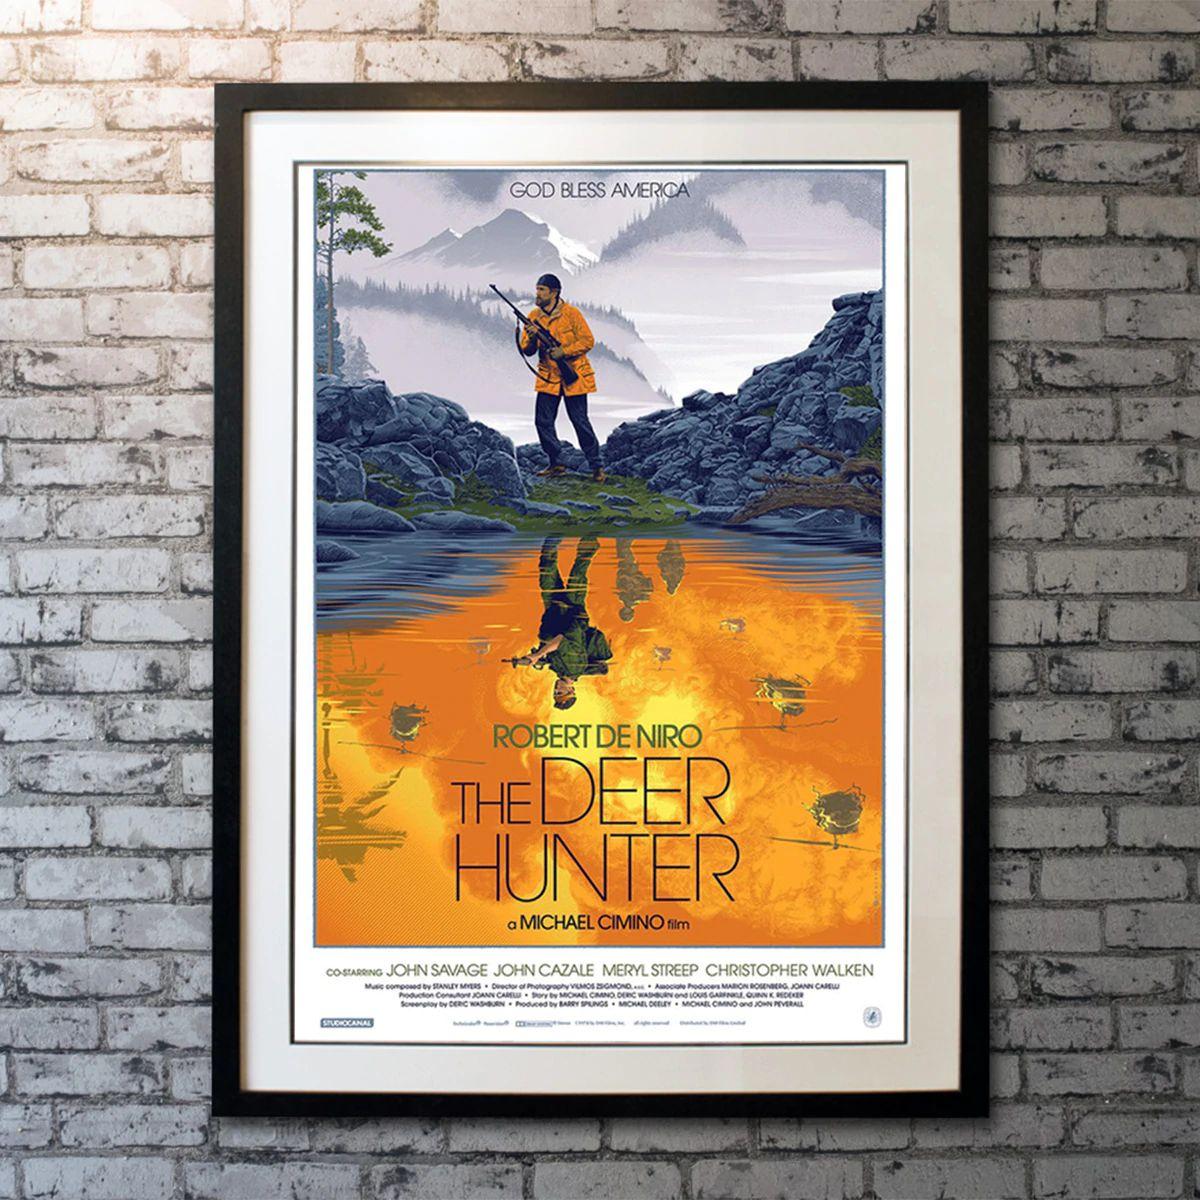 The Deer Hunter, Unframed Poster, 2019

Limited Edition Print (24 x 36). 2019 Limited Edition screen print of 375 by artist Laurent Durieux for 